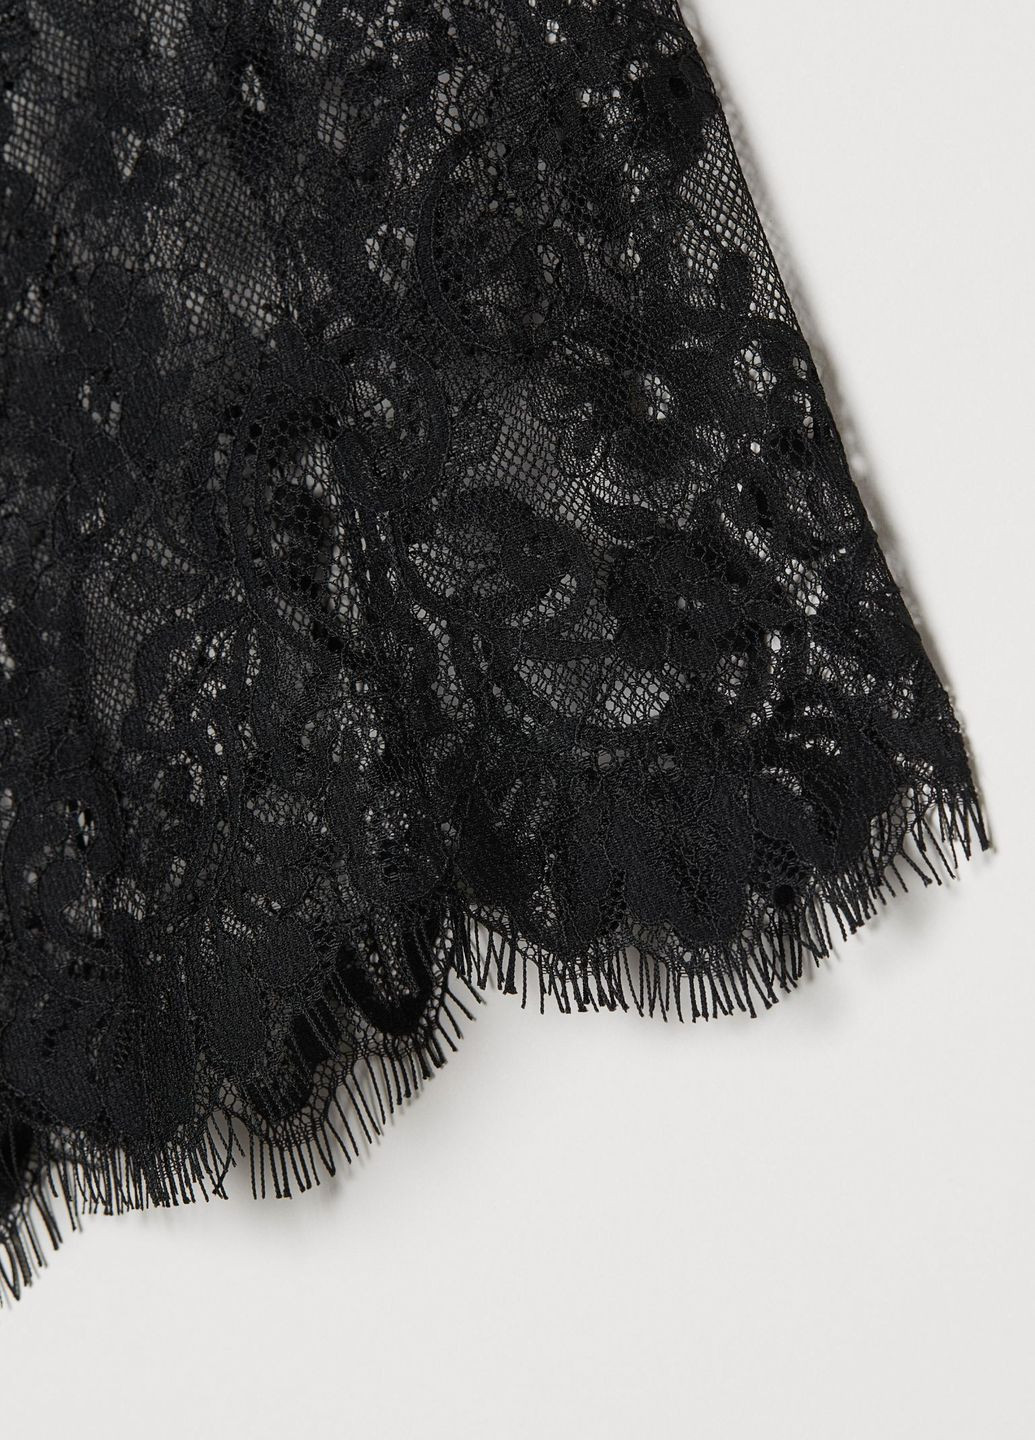 Женский комбинезон H&M комбинезон-брюки чёрный праздничный, коктейльный, деловой, повседневный, вечерний